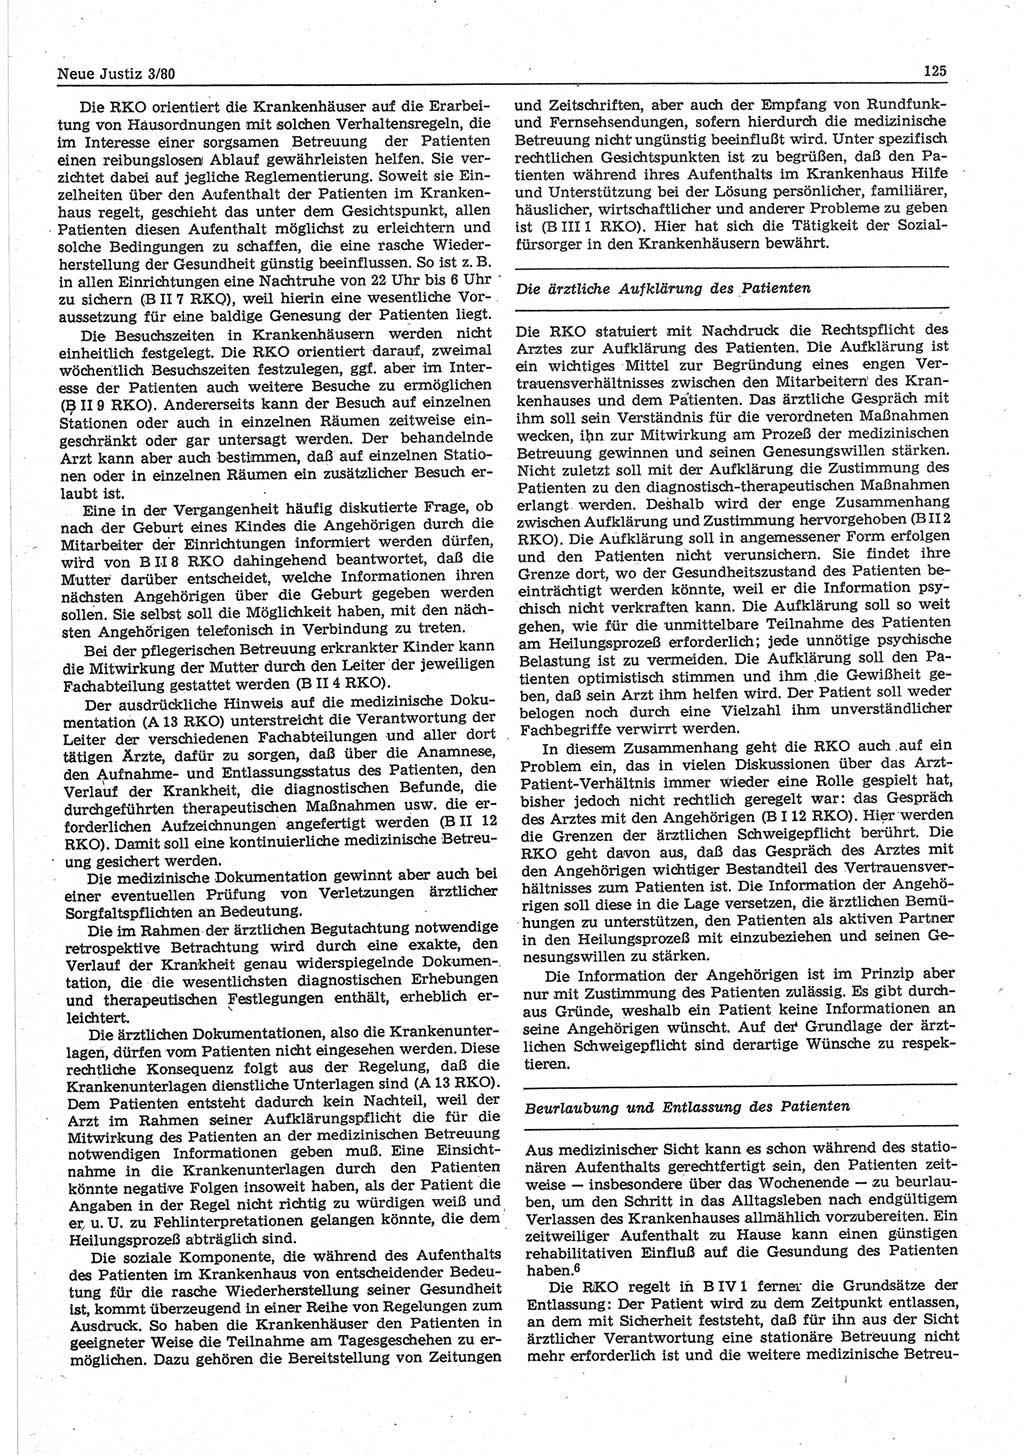 Neue Justiz (NJ), Zeitschrift für sozialistisches Recht und Gesetzlichkeit [Deutsche Demokratische Republik (DDR)], 34. Jahrgang 1980, Seite 125 (NJ DDR 1980, S. 125)